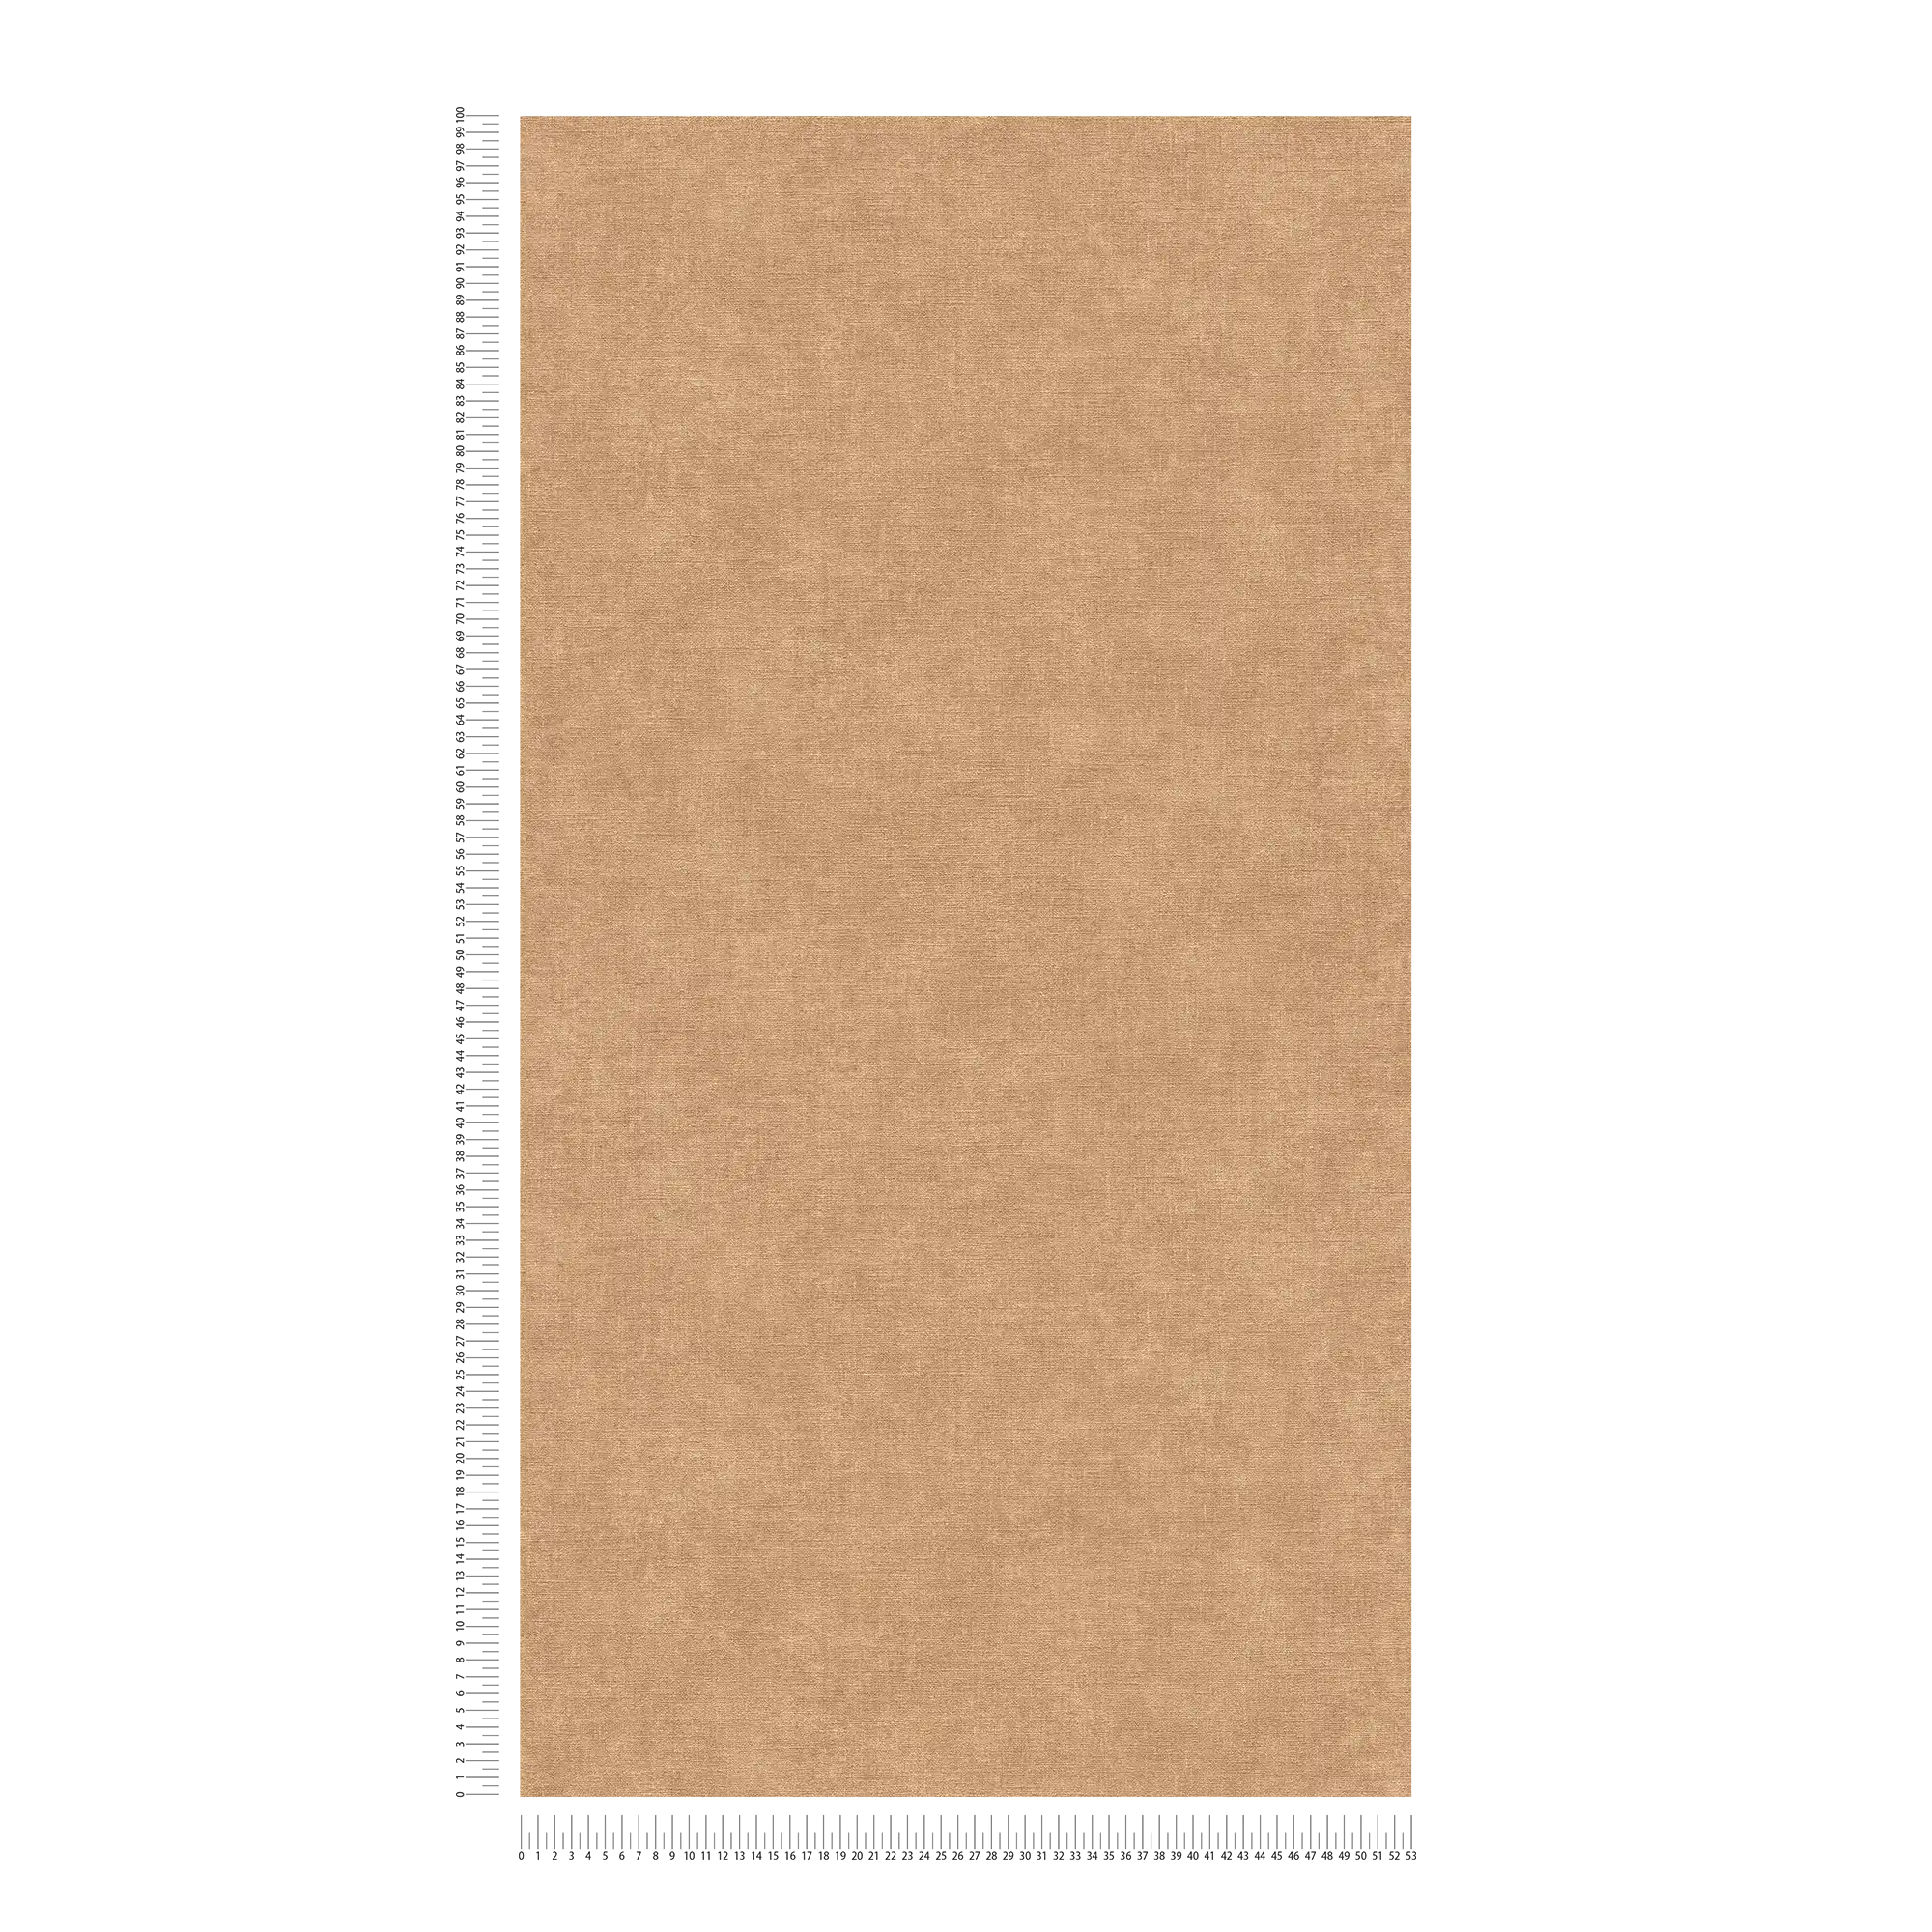             Carta da parati unitaria con texture leggera in aspetto tessile - marrone, beige
        